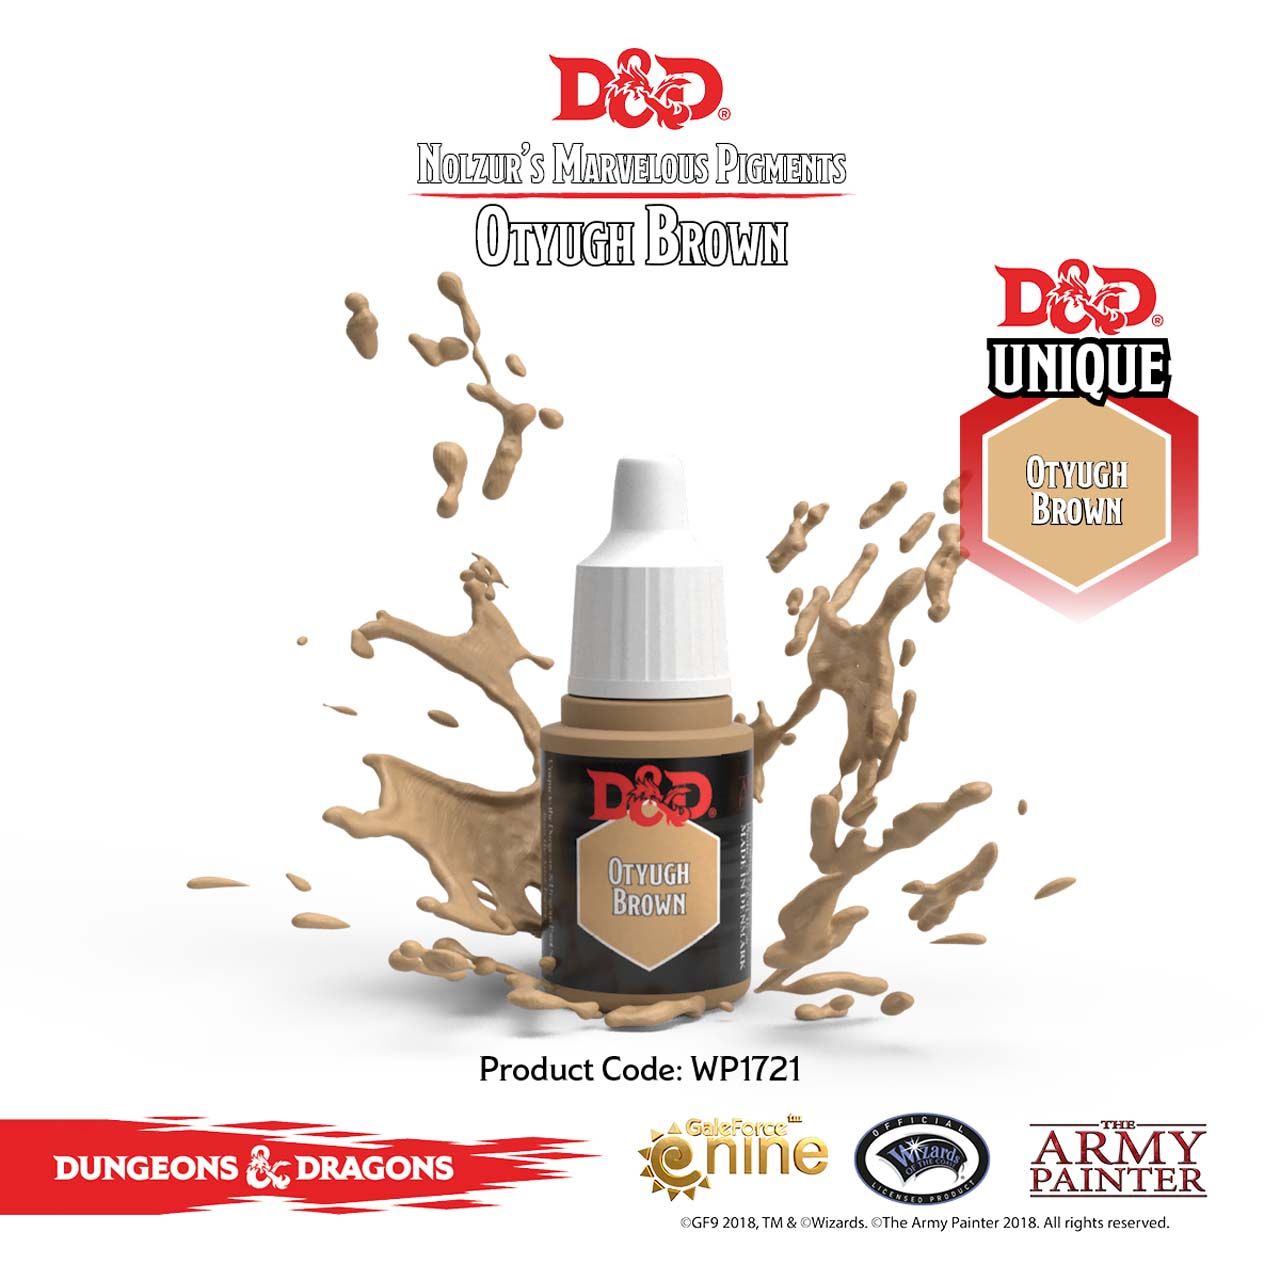 D&D: Otyugh Brown